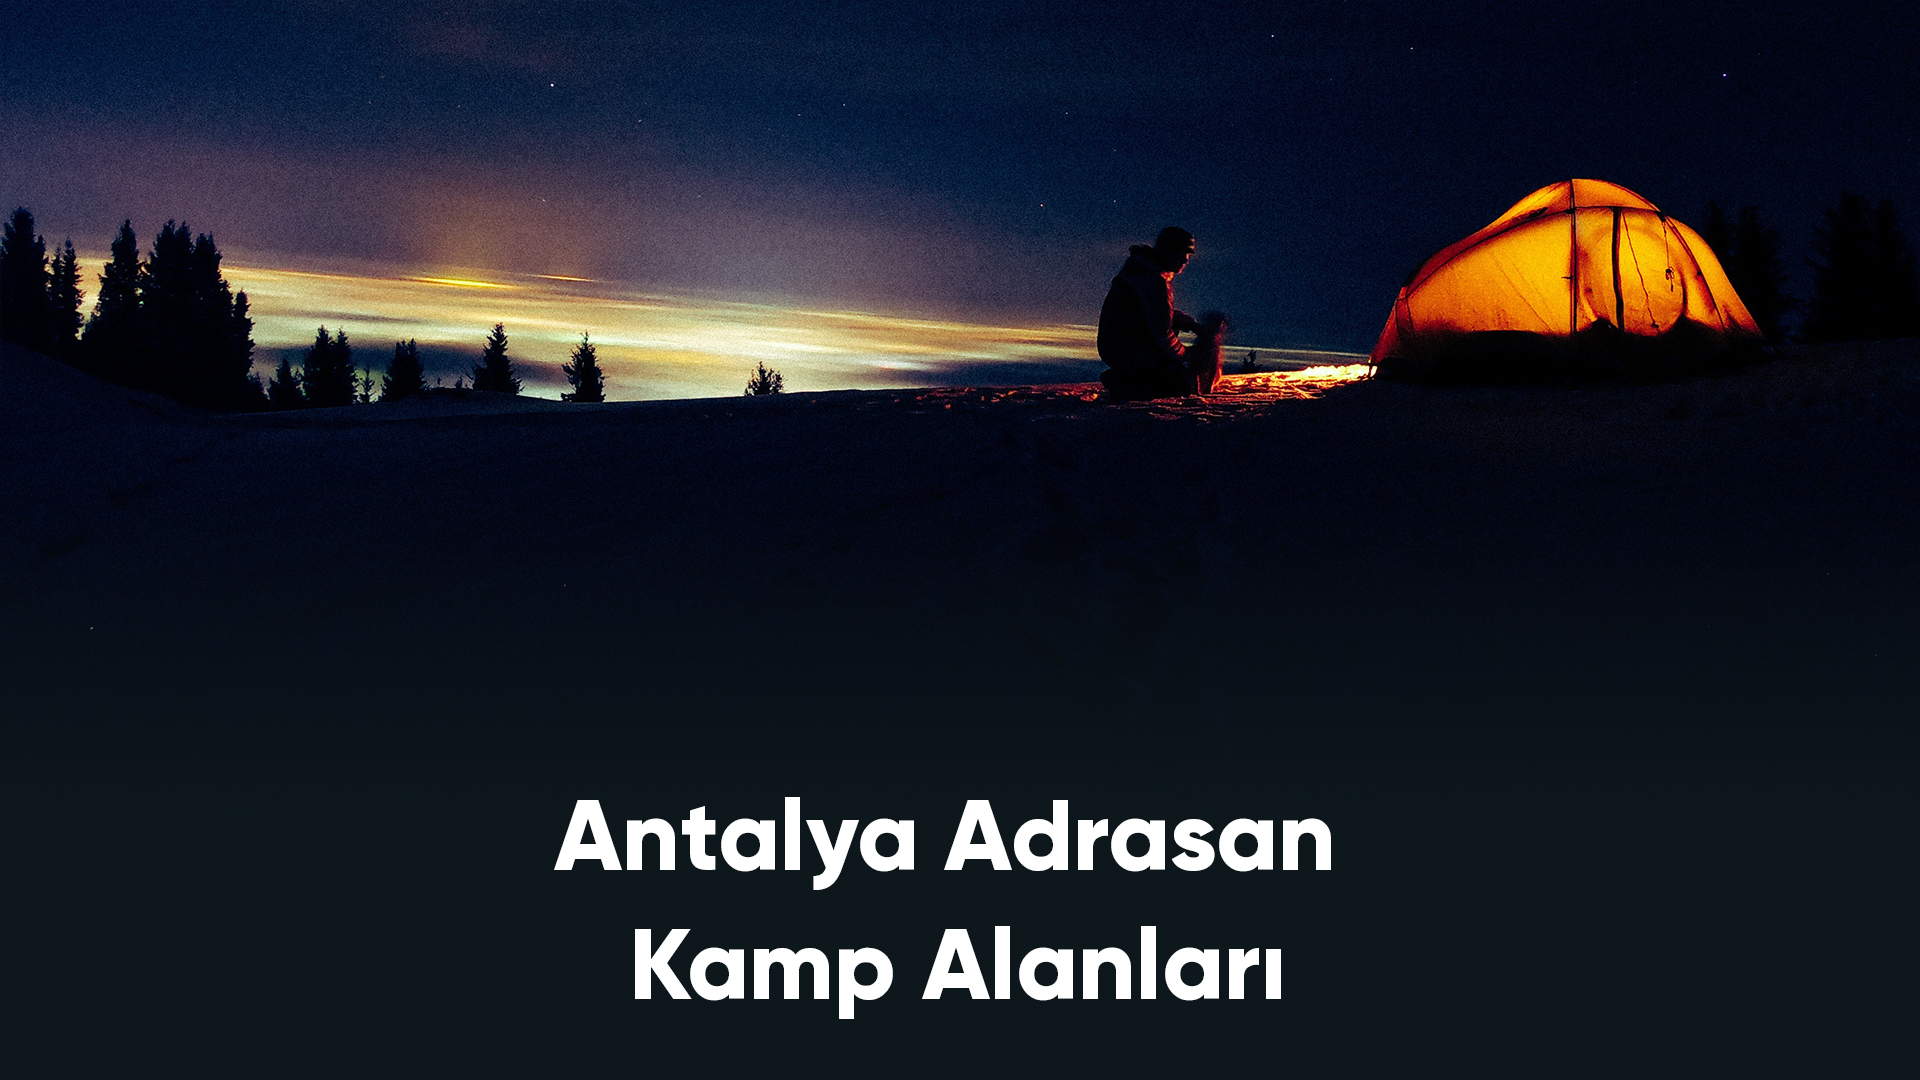 Antalya Adrasan Kamp Alanları